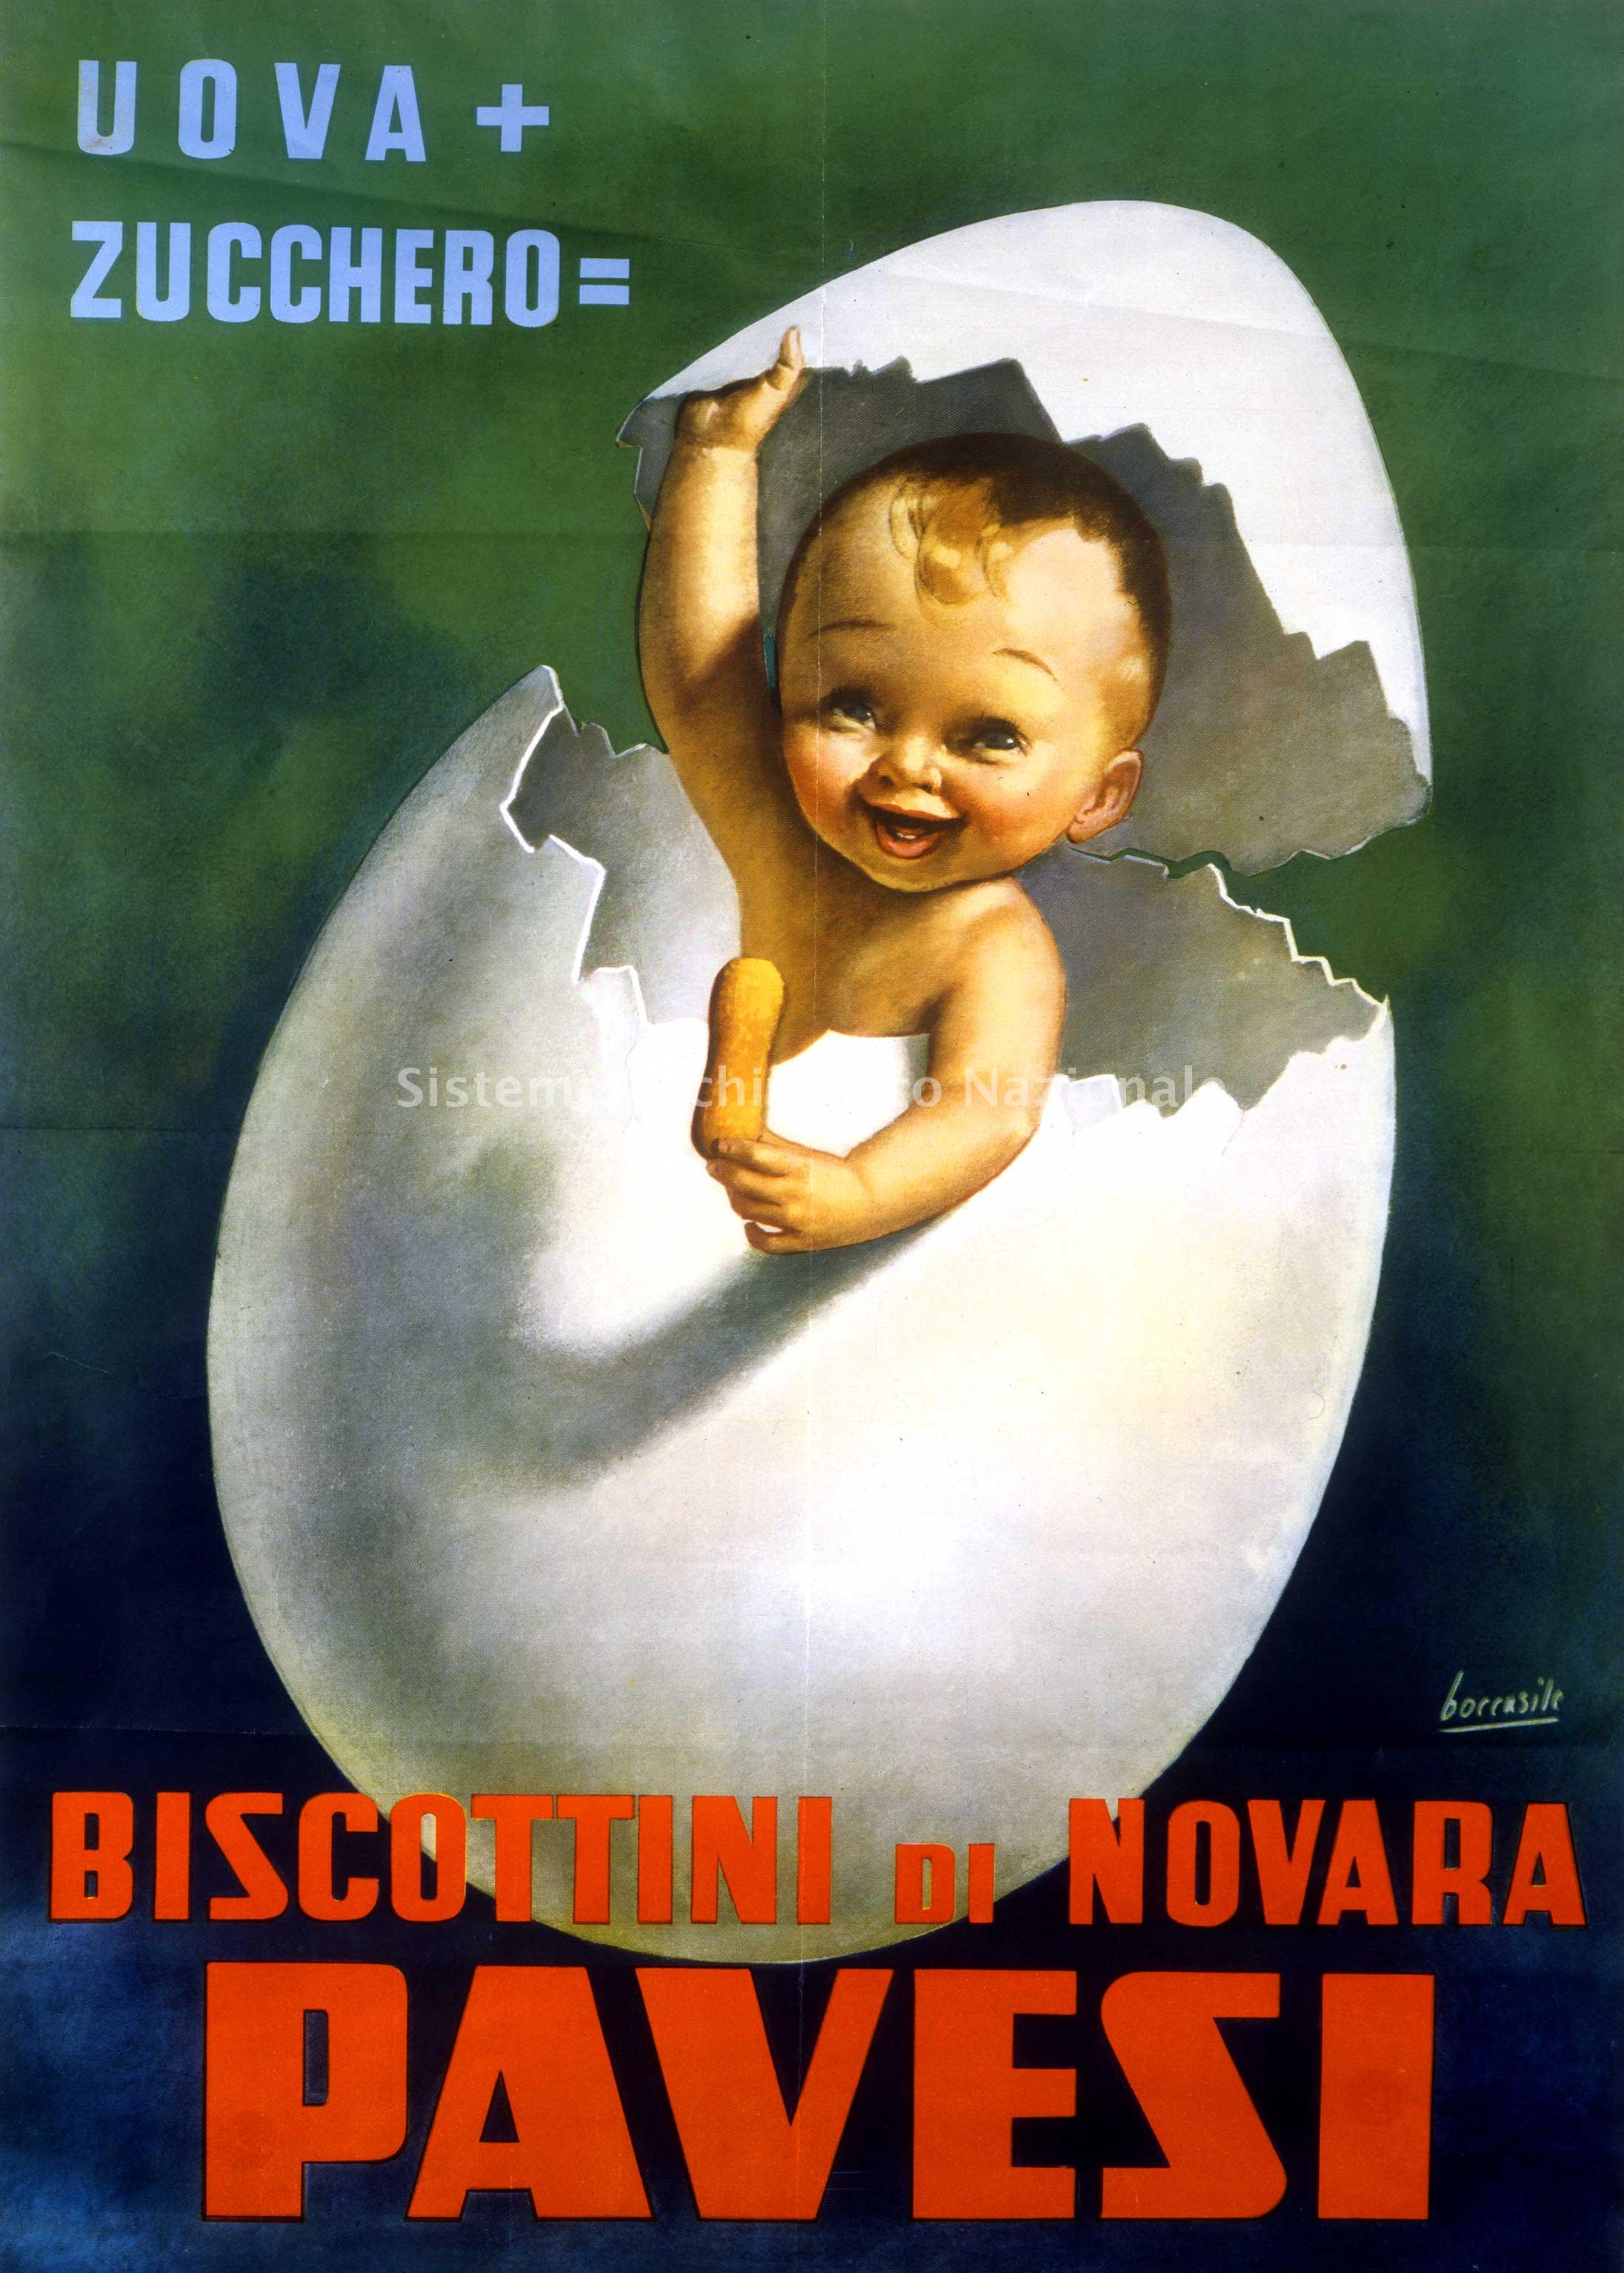   Manifesto disegnato da Gino Boccasile per pubblicizzare i biscottini di Novara, antesignani dei Pavesini, 1948 (Archivio storico Barilla G. e R. Fratelli spa, Fondo Pavesi)
